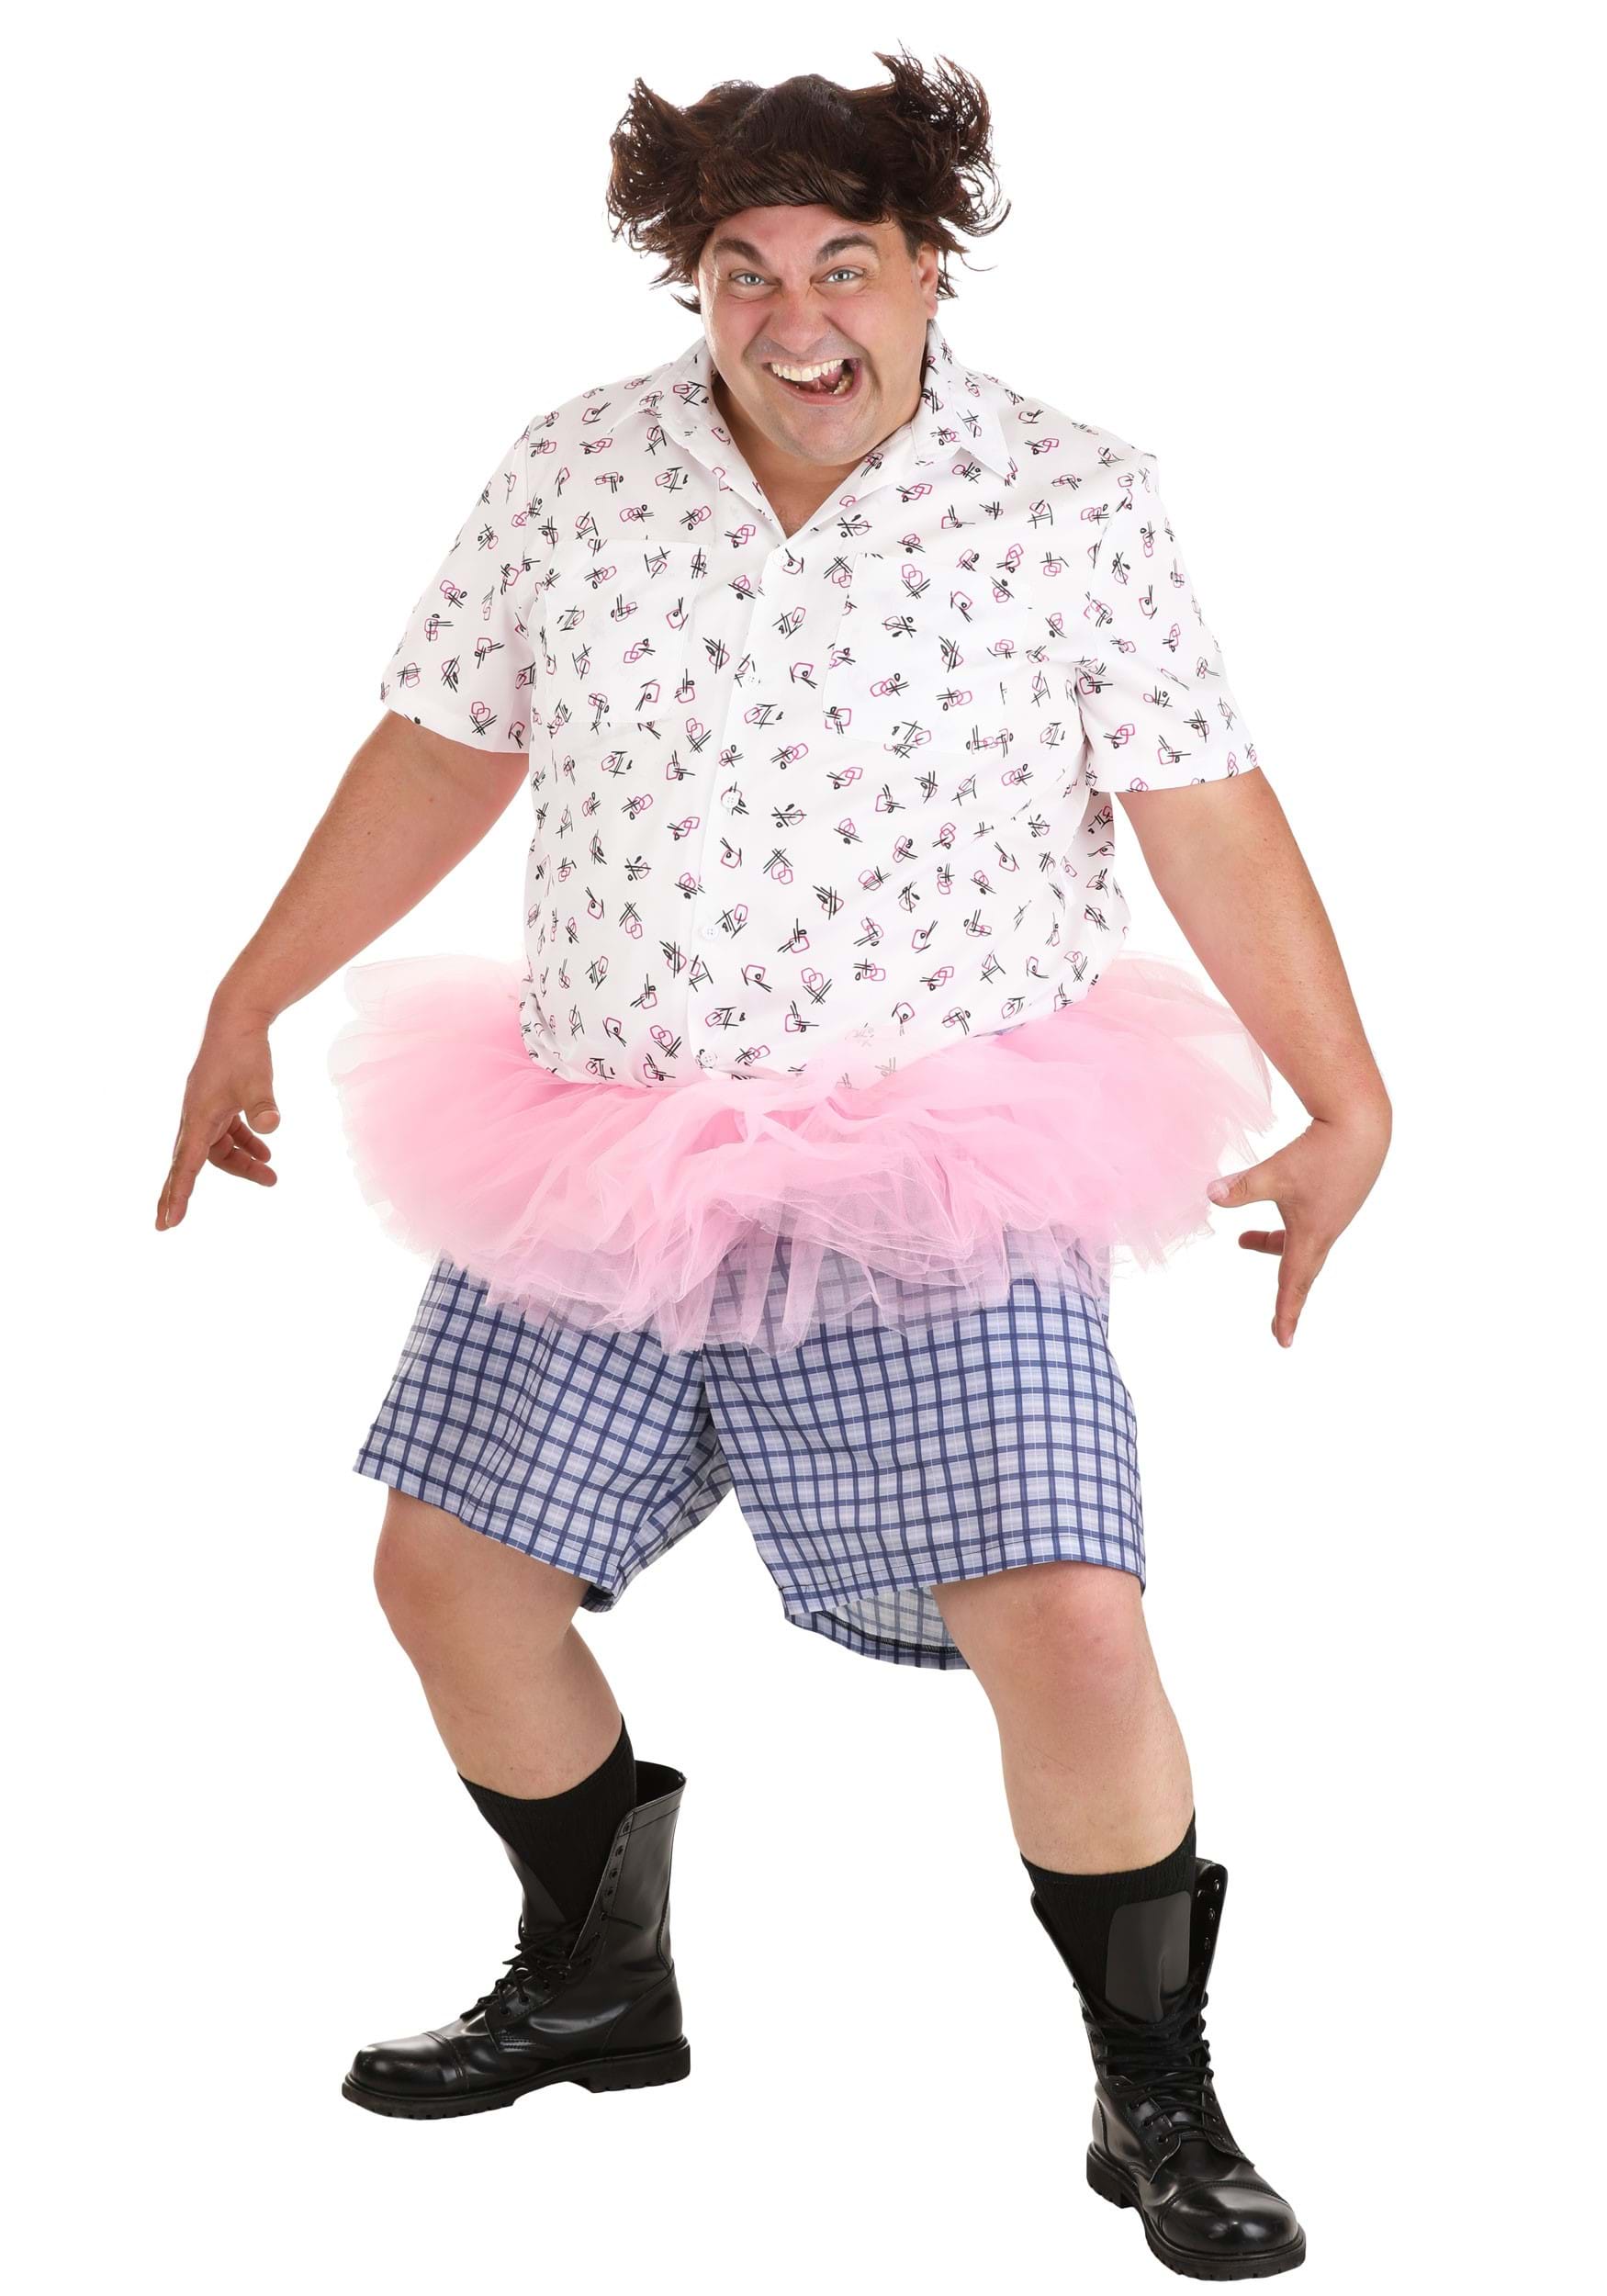 Ace Ventura Tutu Costume For Plus Size Adult Men